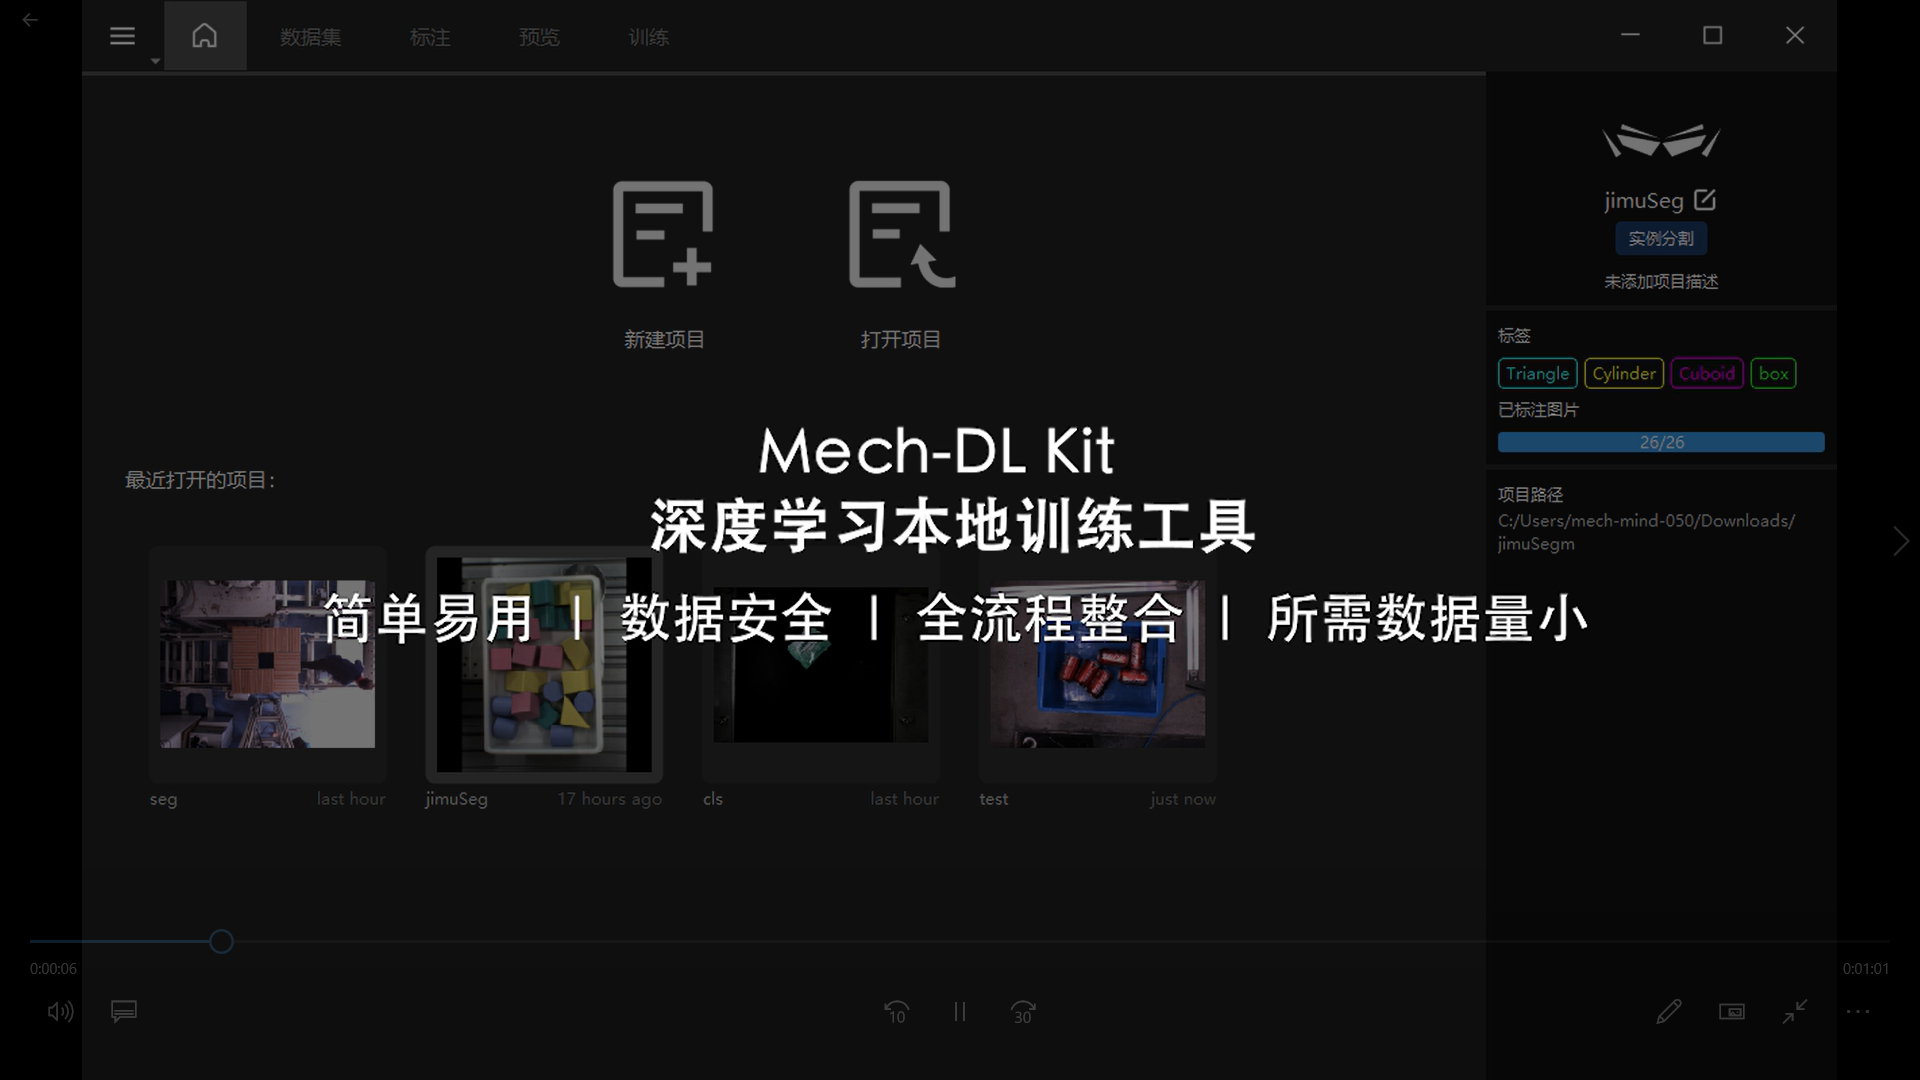 新品发布 | Mech-DL Kit深度学习本地训练工具，更高效、易用、安全